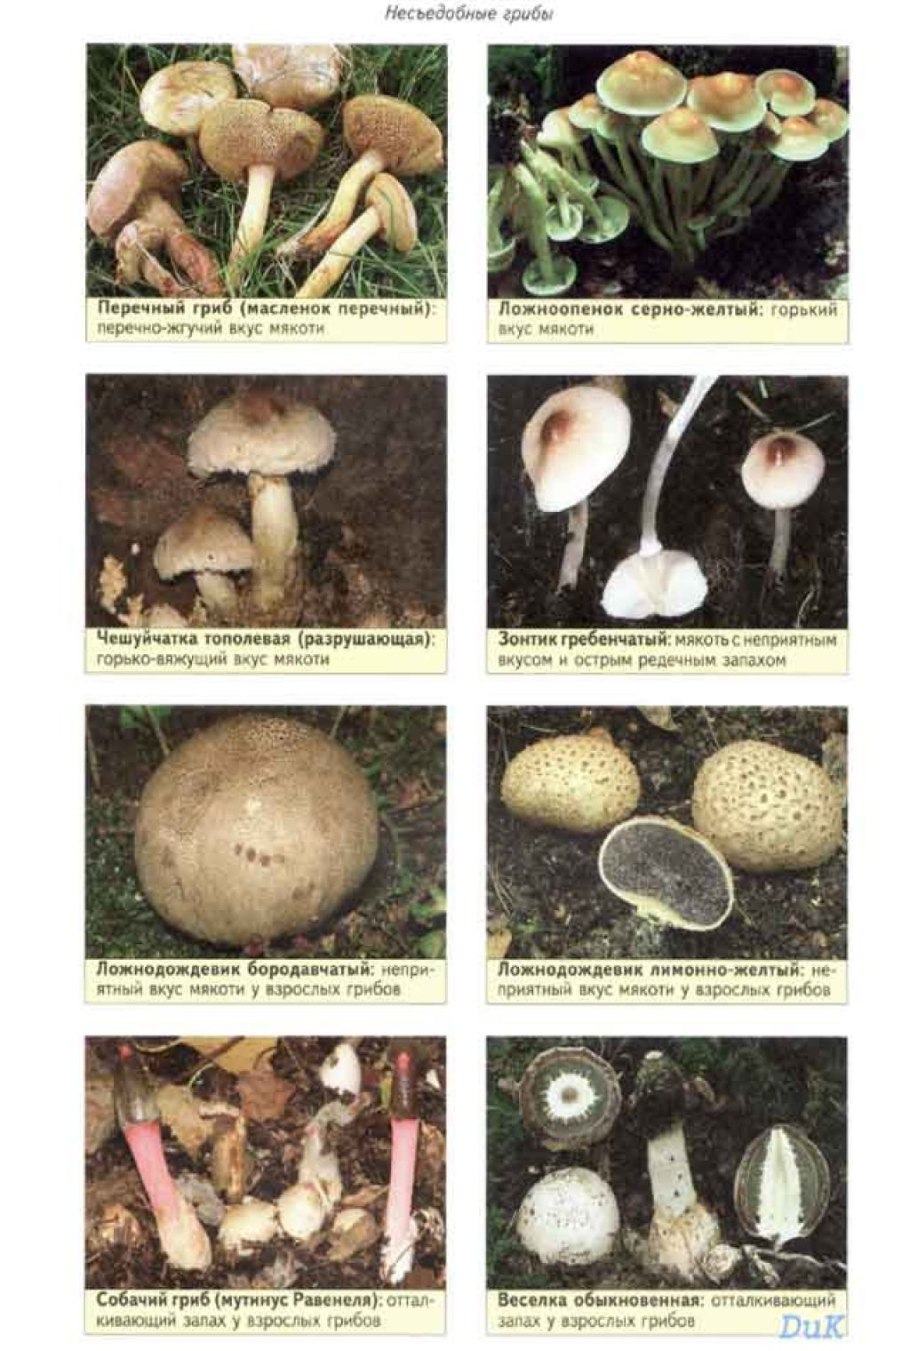 грибы съедобные фото грибов с названиями распространенные